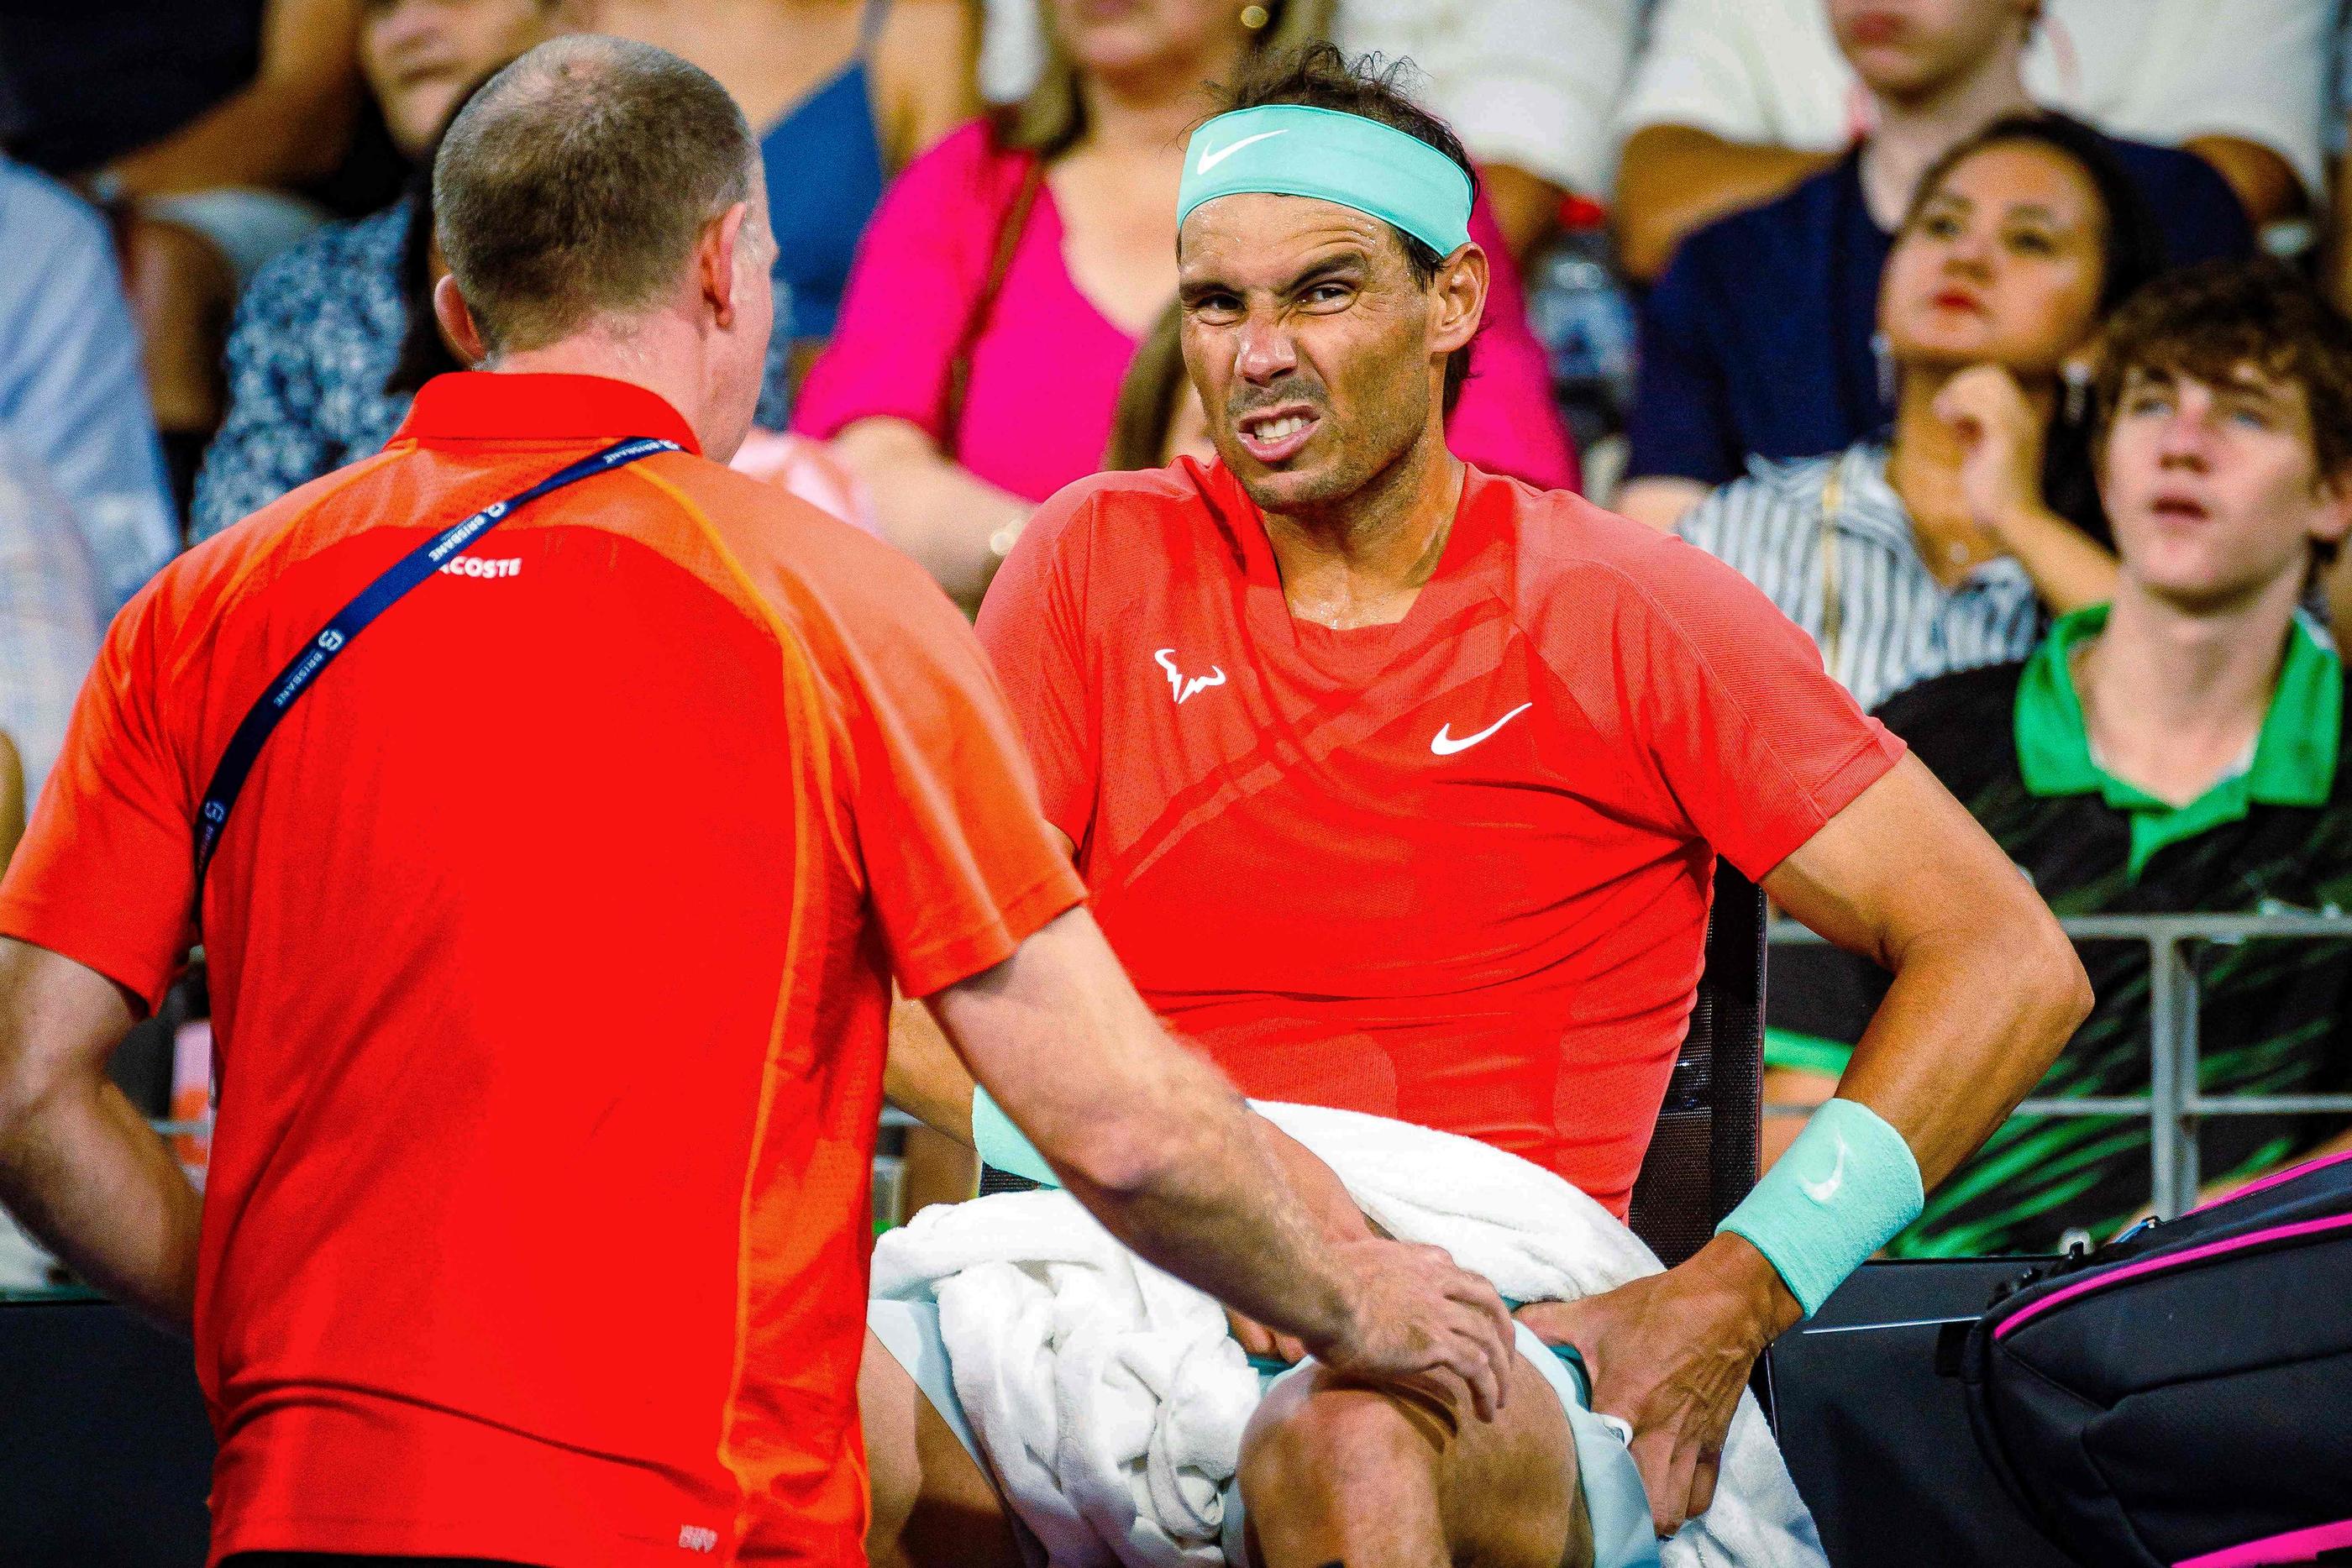 Victime d'une petite déchirure à un muscle, Rafael Nadal ne participera pas à l'Open d'Australie. Patrick HAMILTON/AFP